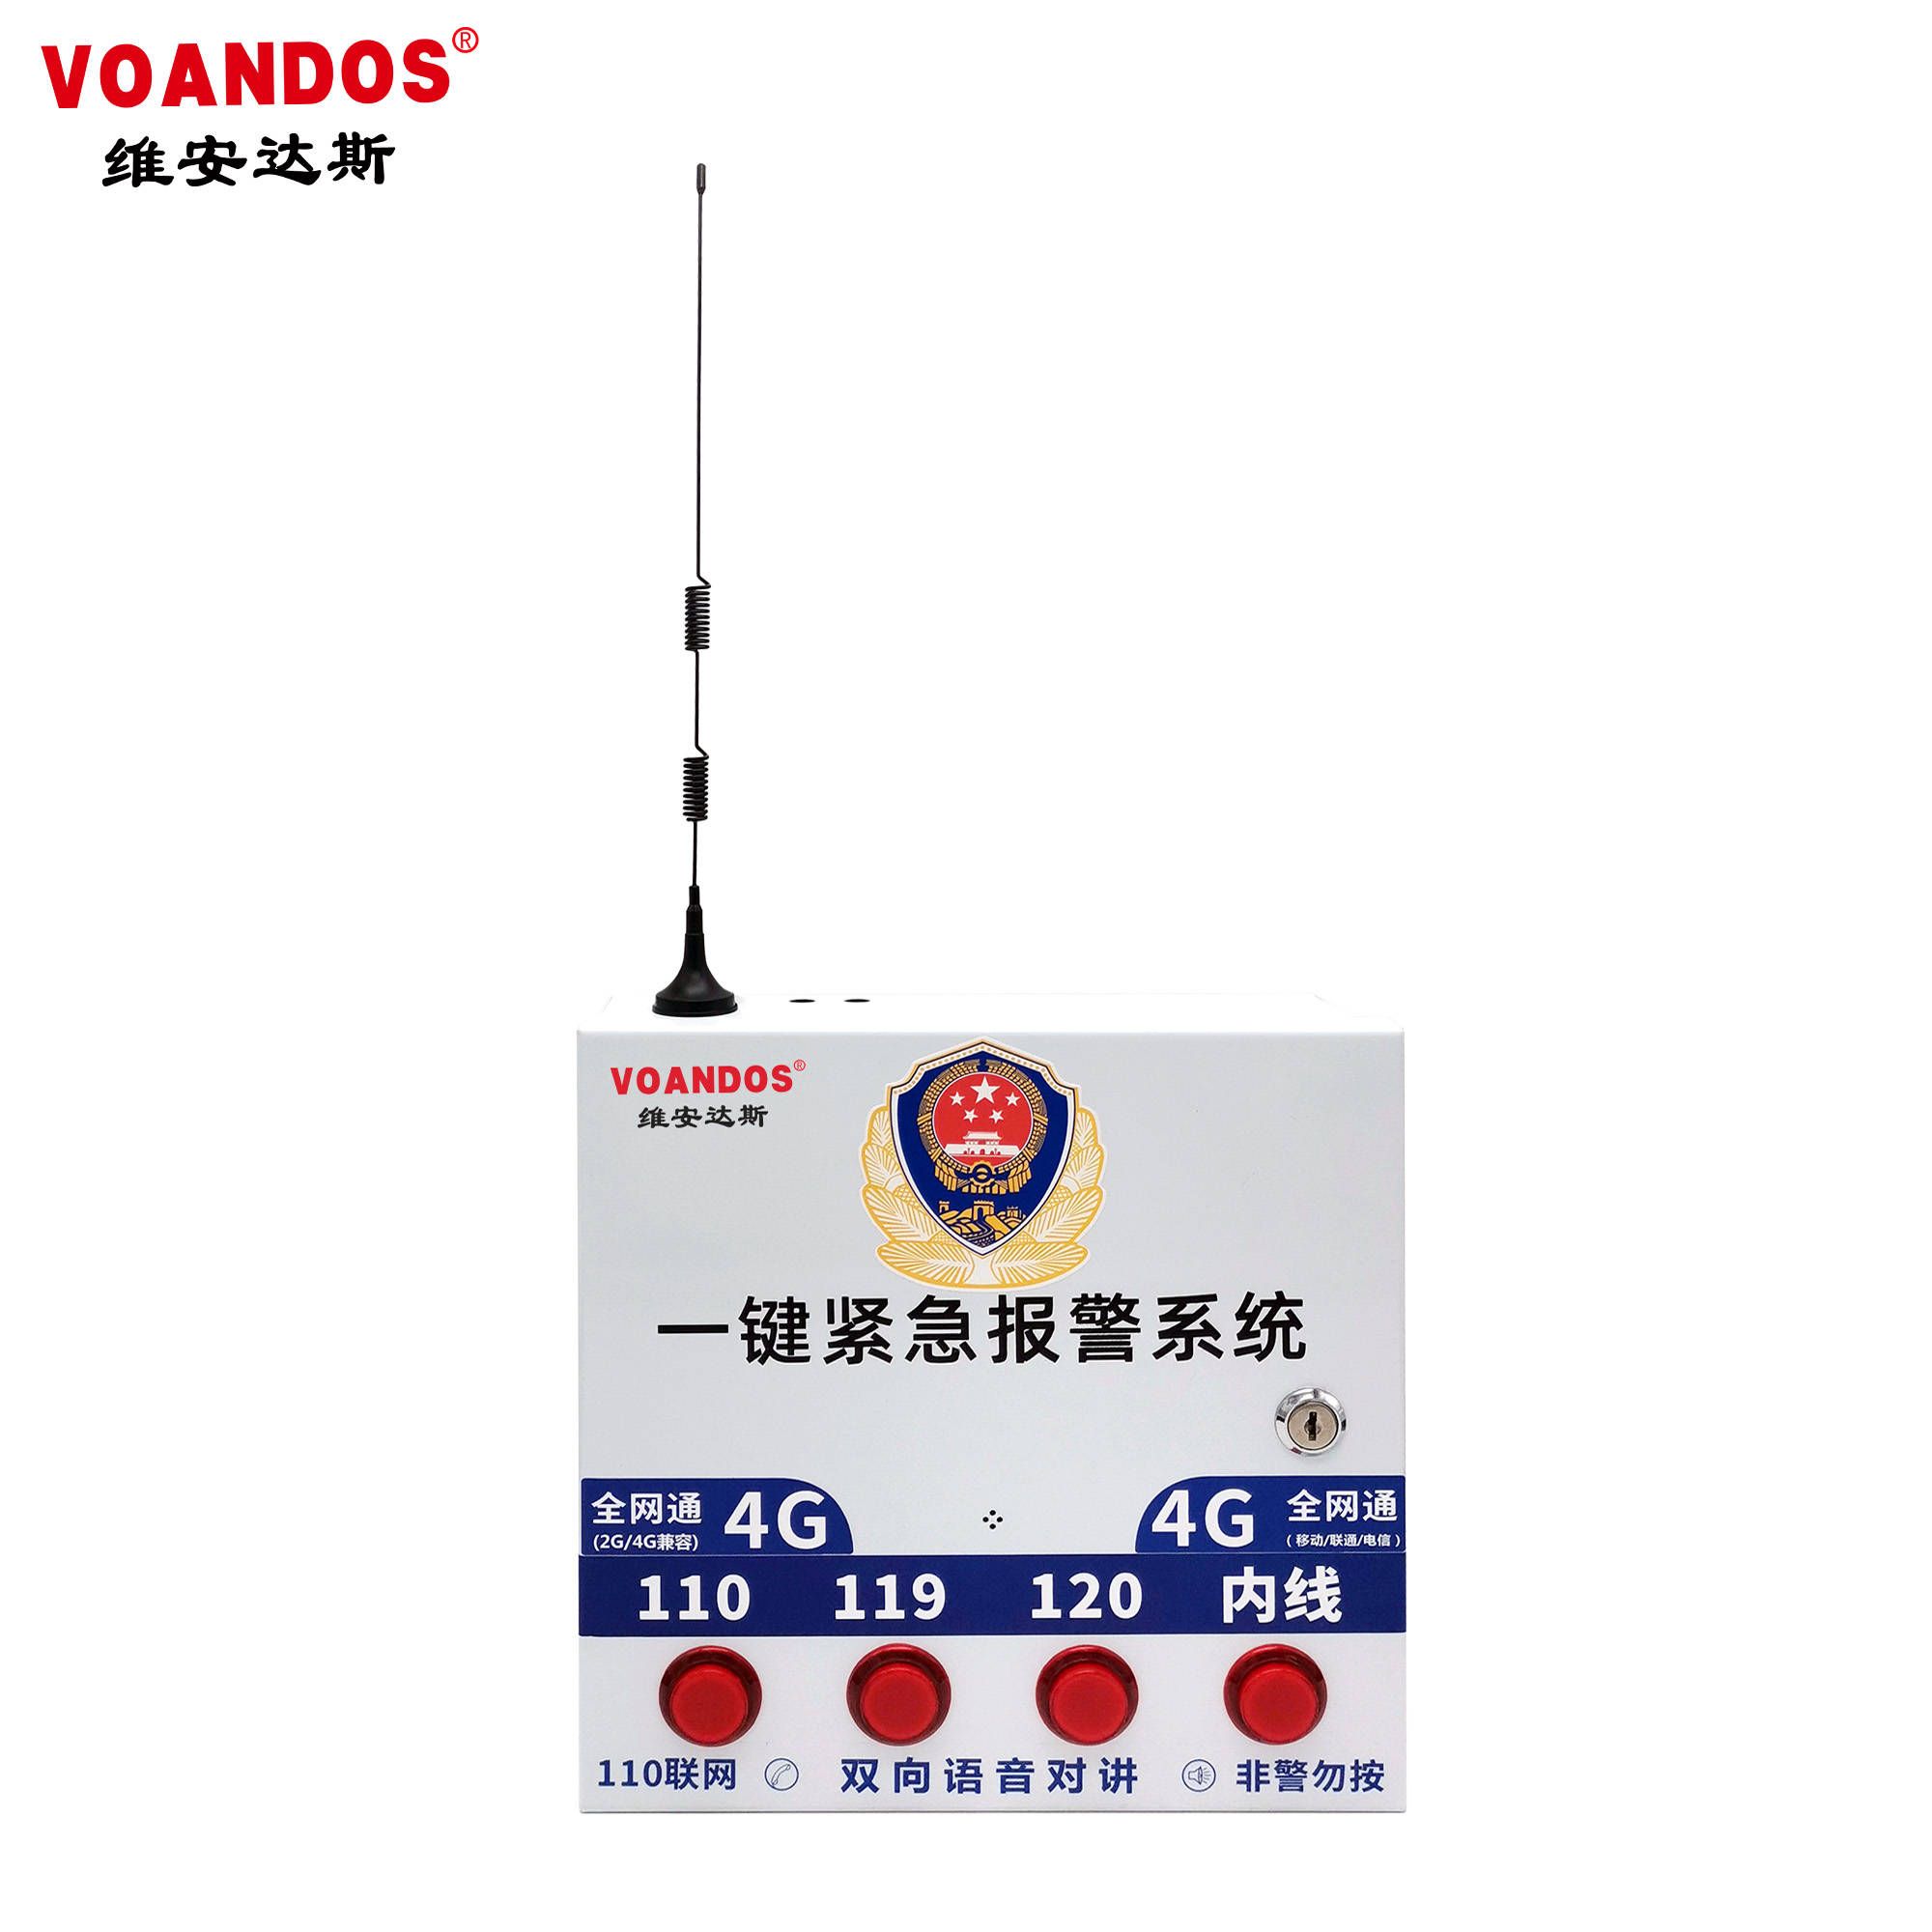 【安防】维安达斯四键紧急报警控制主机（4G全网通） VD-704G4